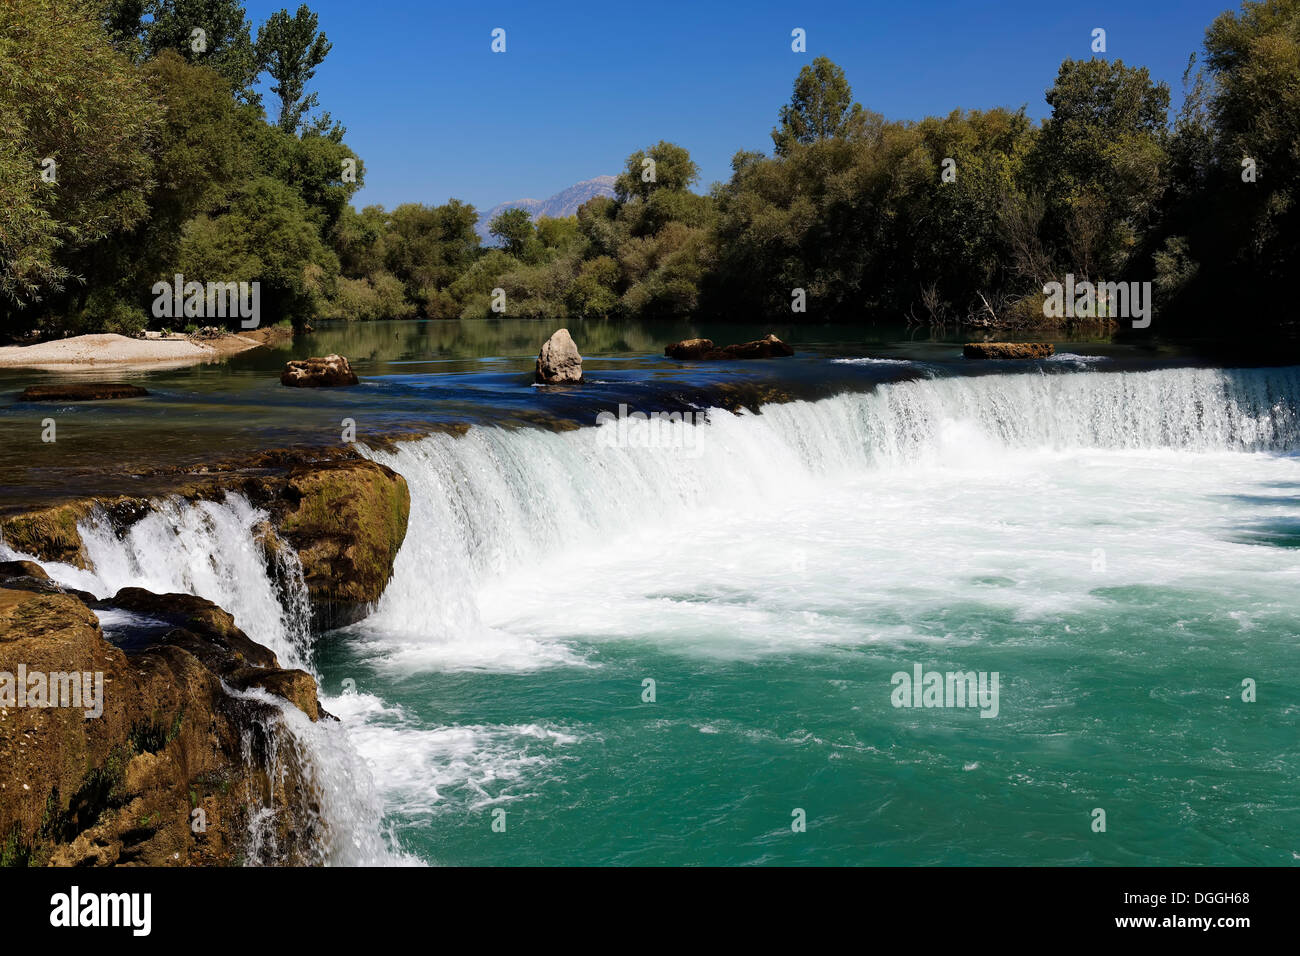 Chute d'eau sur la rivière de Manavgat dans la ville de Manavgat, Antalya, Turkish Riviera, la Turquie, l'Asie Banque D'Images